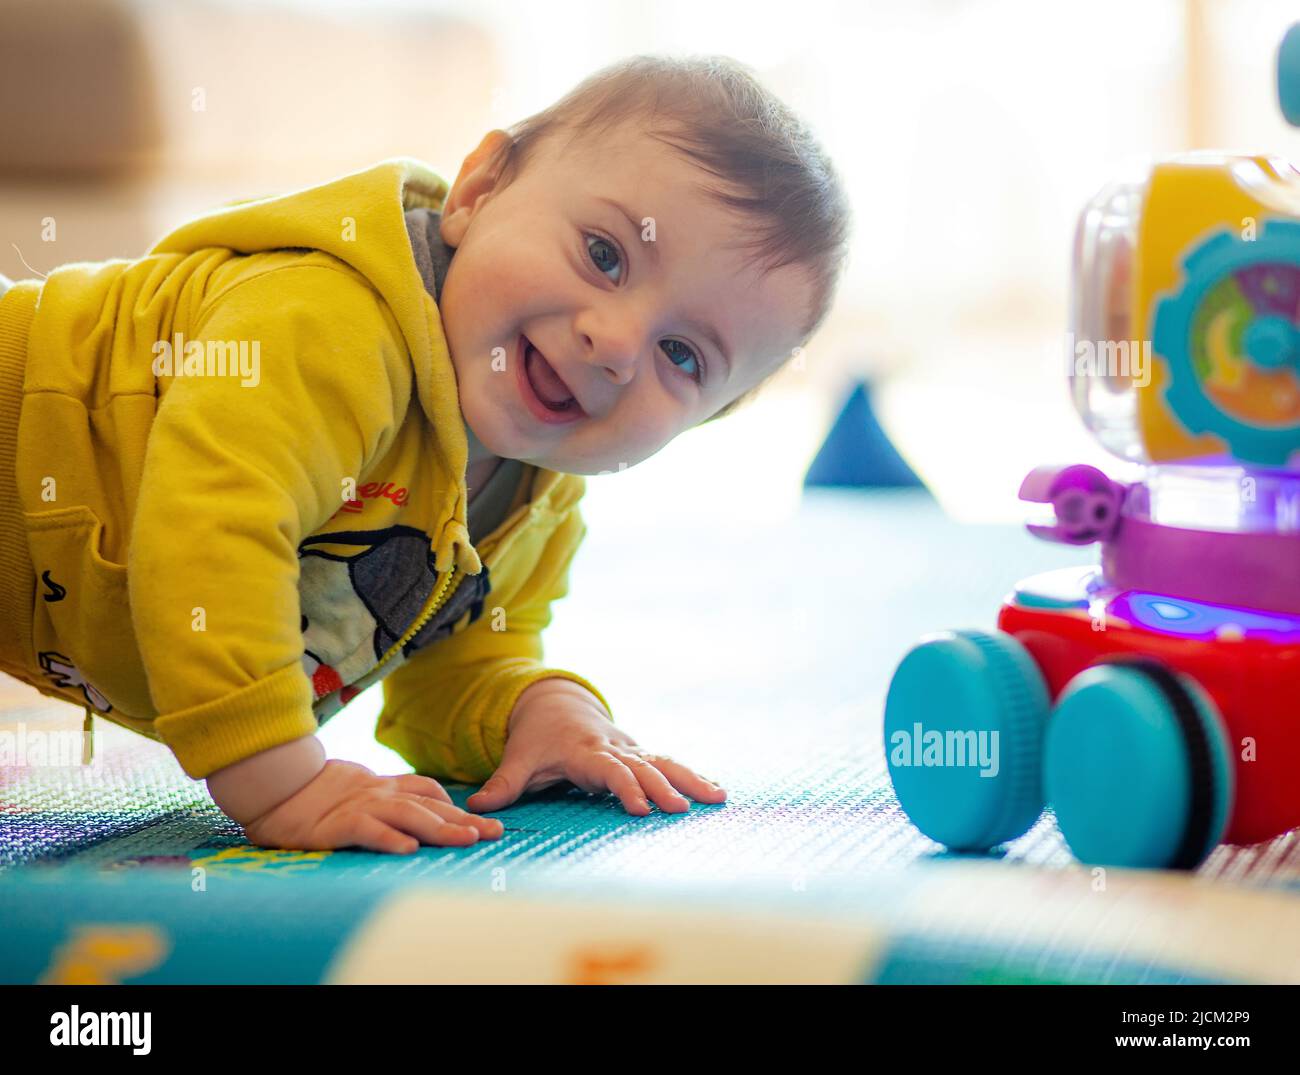 Un bebé de unos meses juega sonriendo en una alfombra suave junto con sus juguetes. Foto de stock